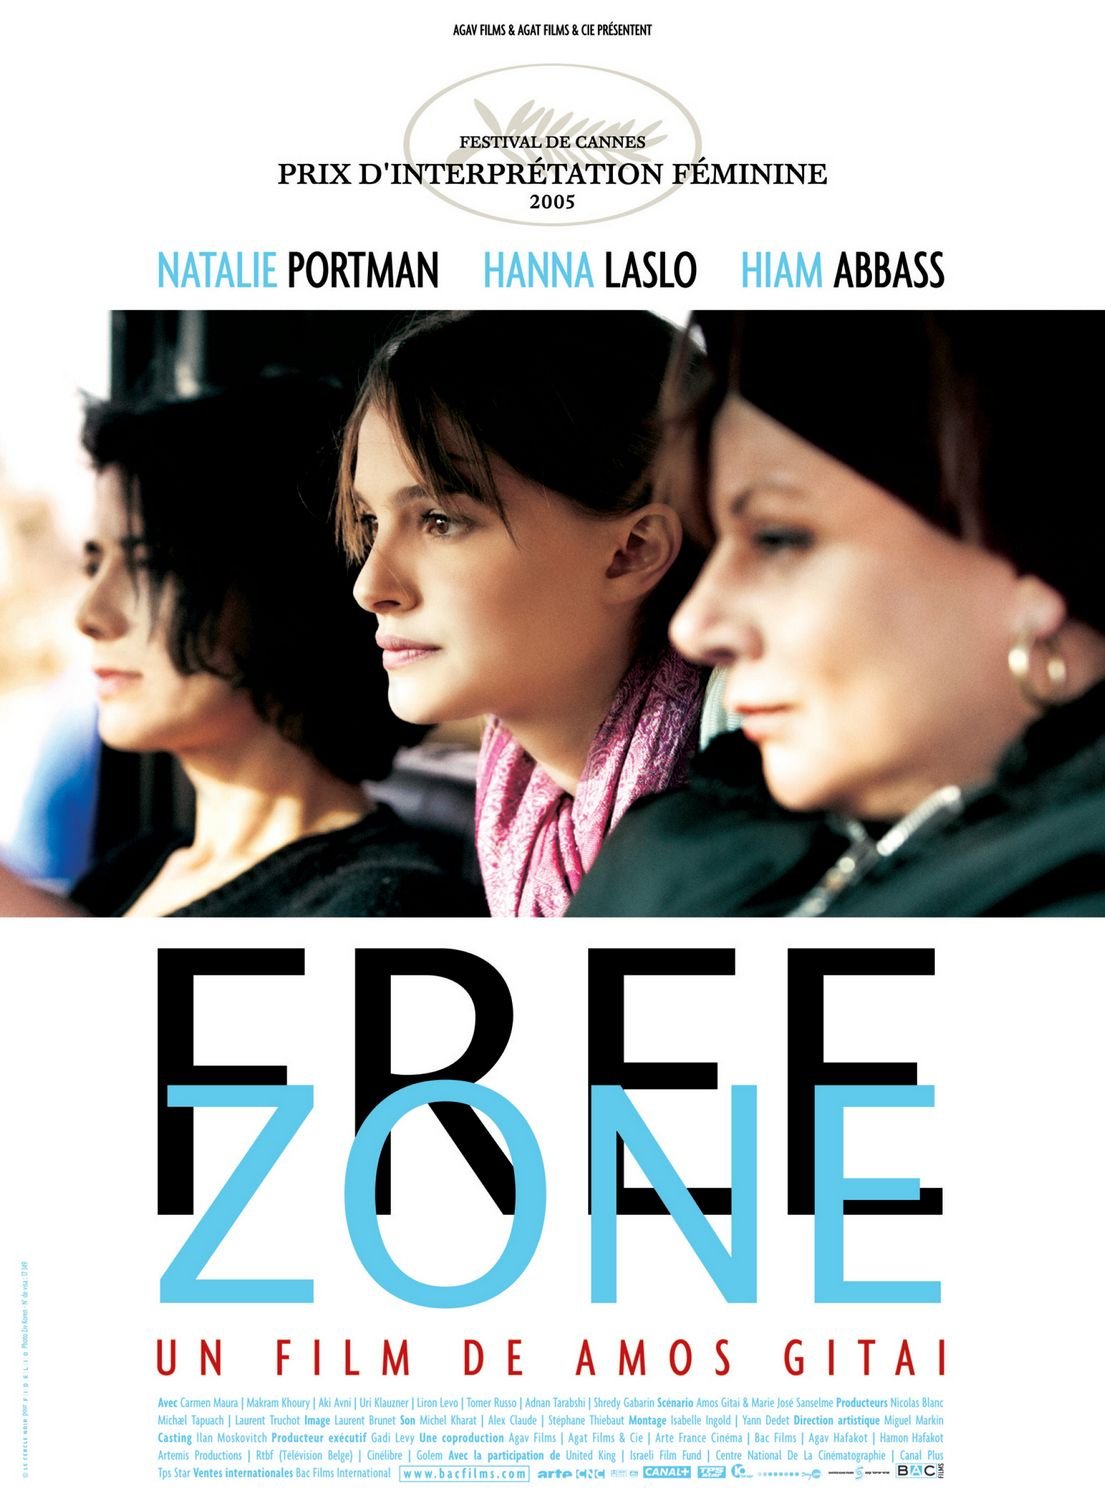 L'affiche du film Free Zone v.f.